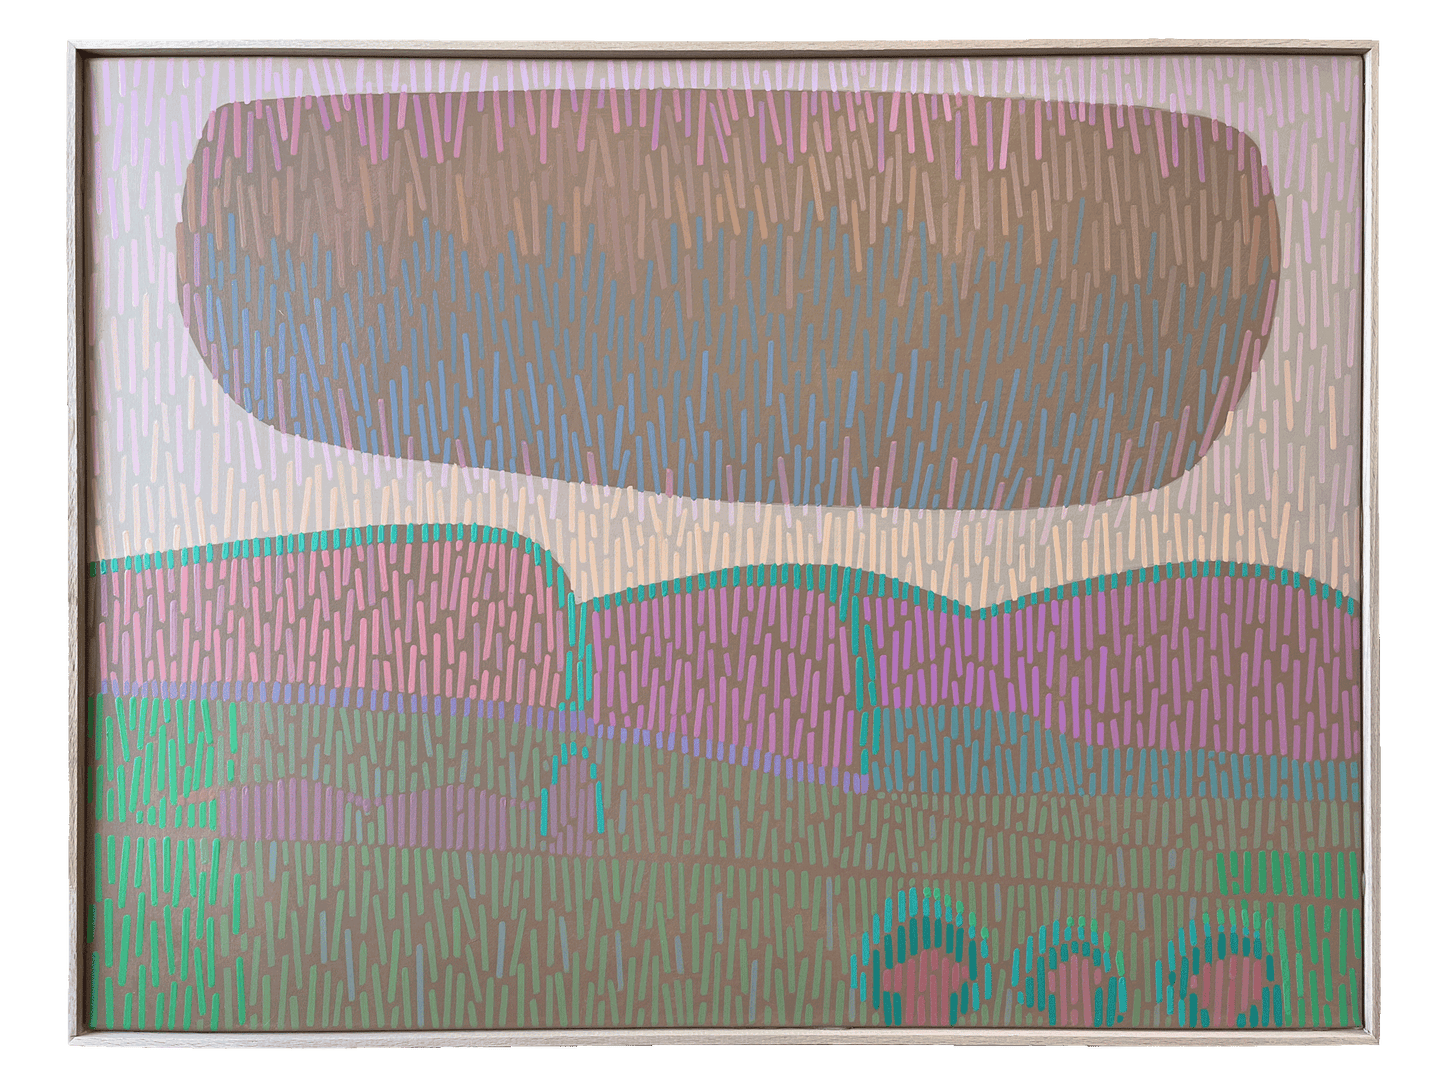 Landschaft Komplementär 5, Unikat, Malerei, handgemaltes Einzelstück, 68 x 52 cm, mit Rahmenleiste